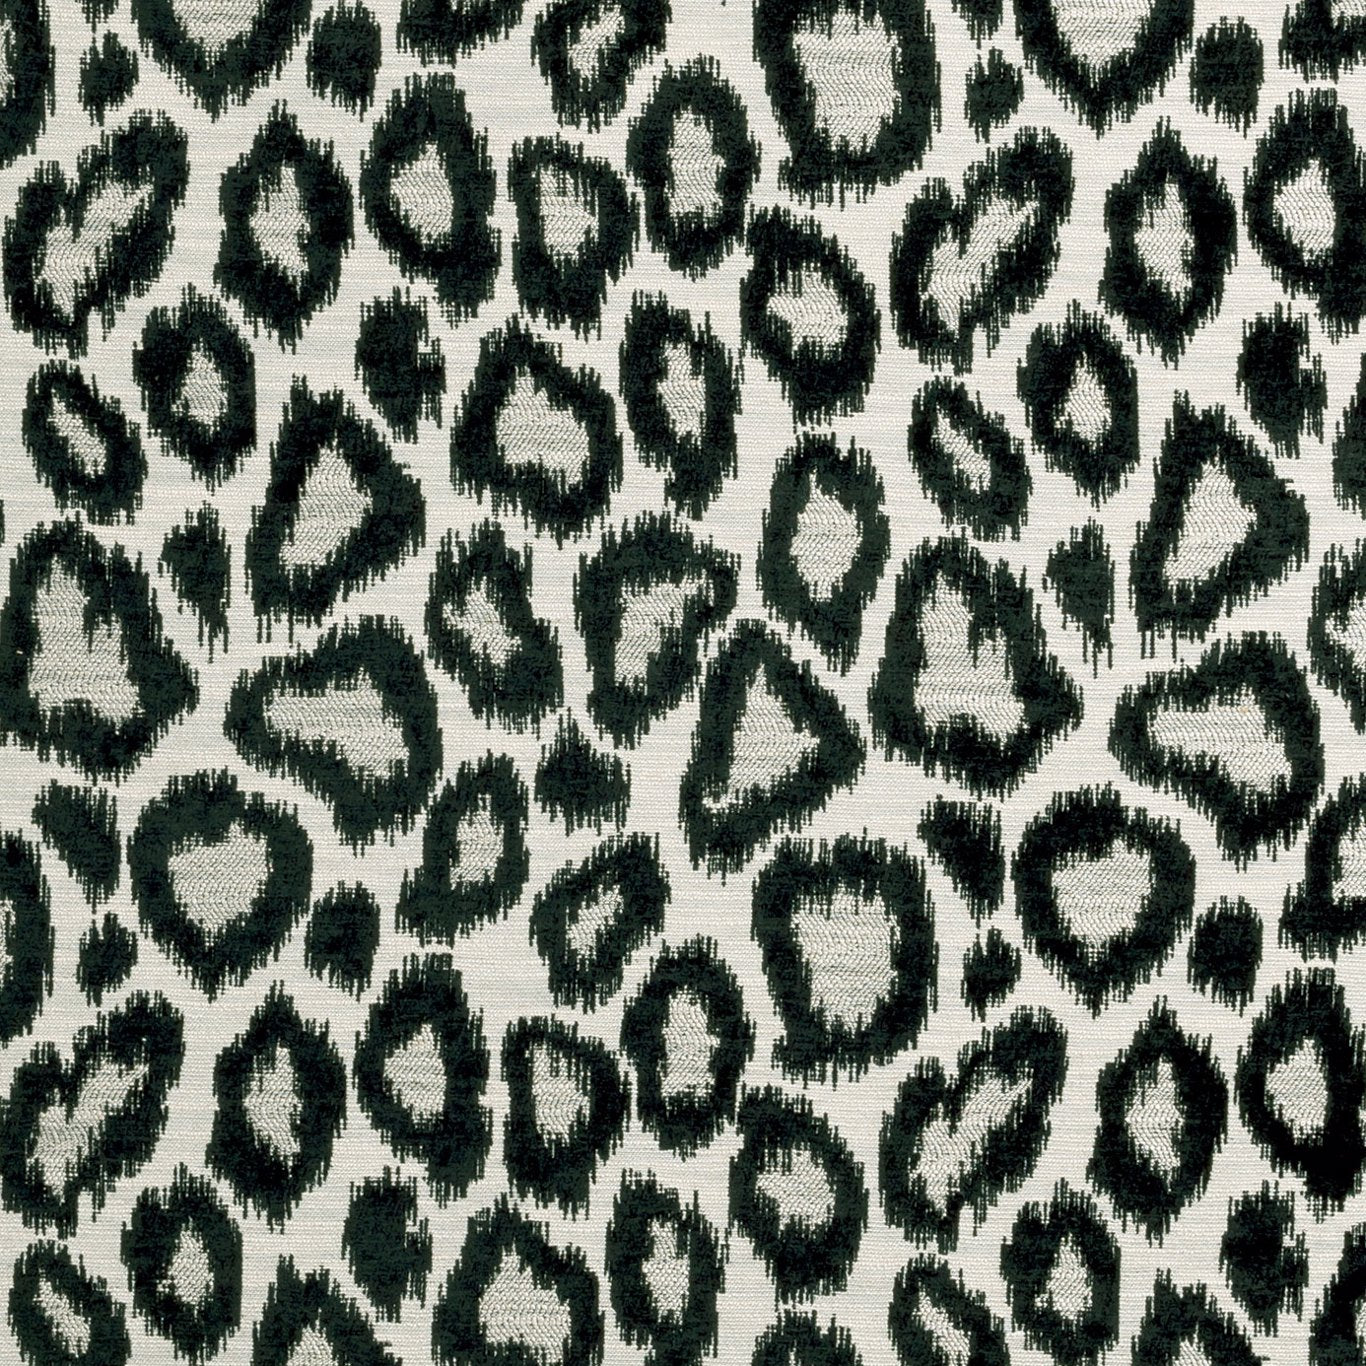 Bw1039 Fabric by Clarke & Clarke - F0912/01 - Black/White